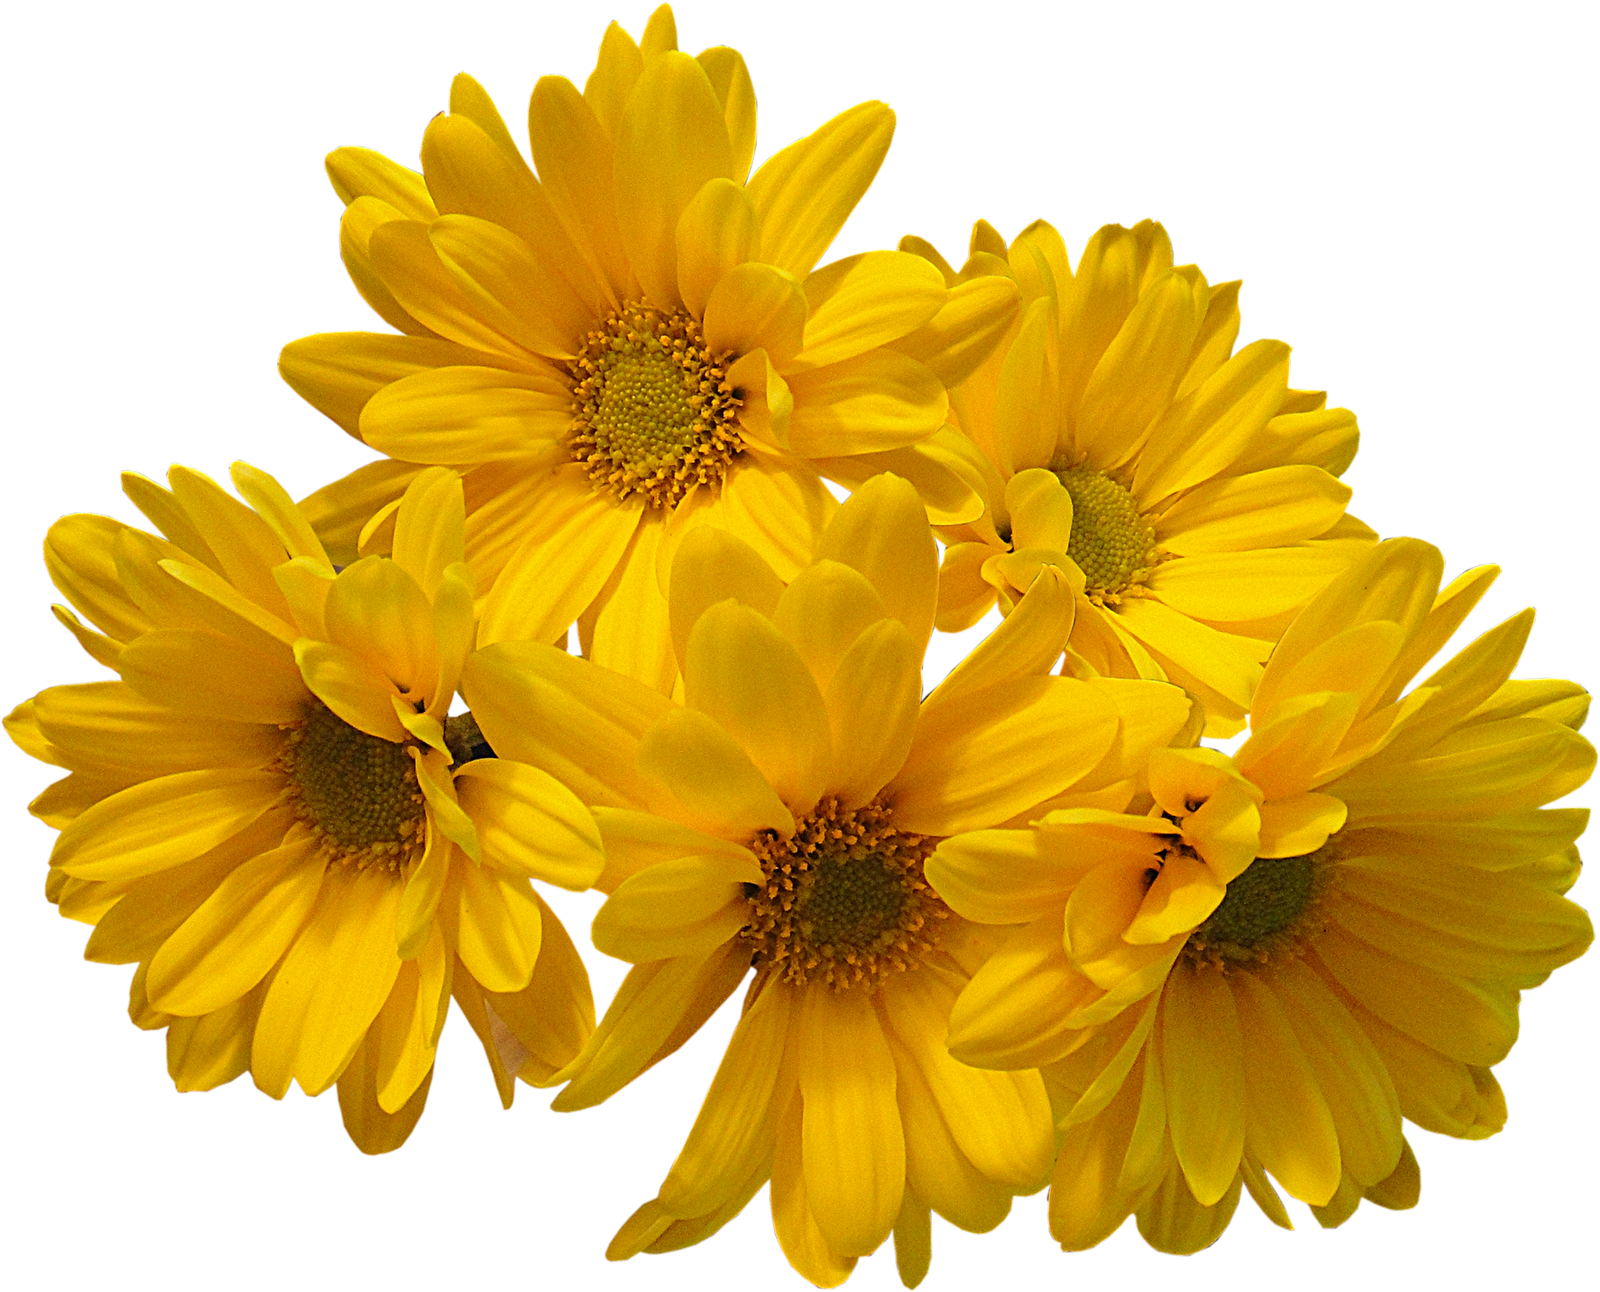 Fleurs jaunes Bouquet PNG Image Transparente